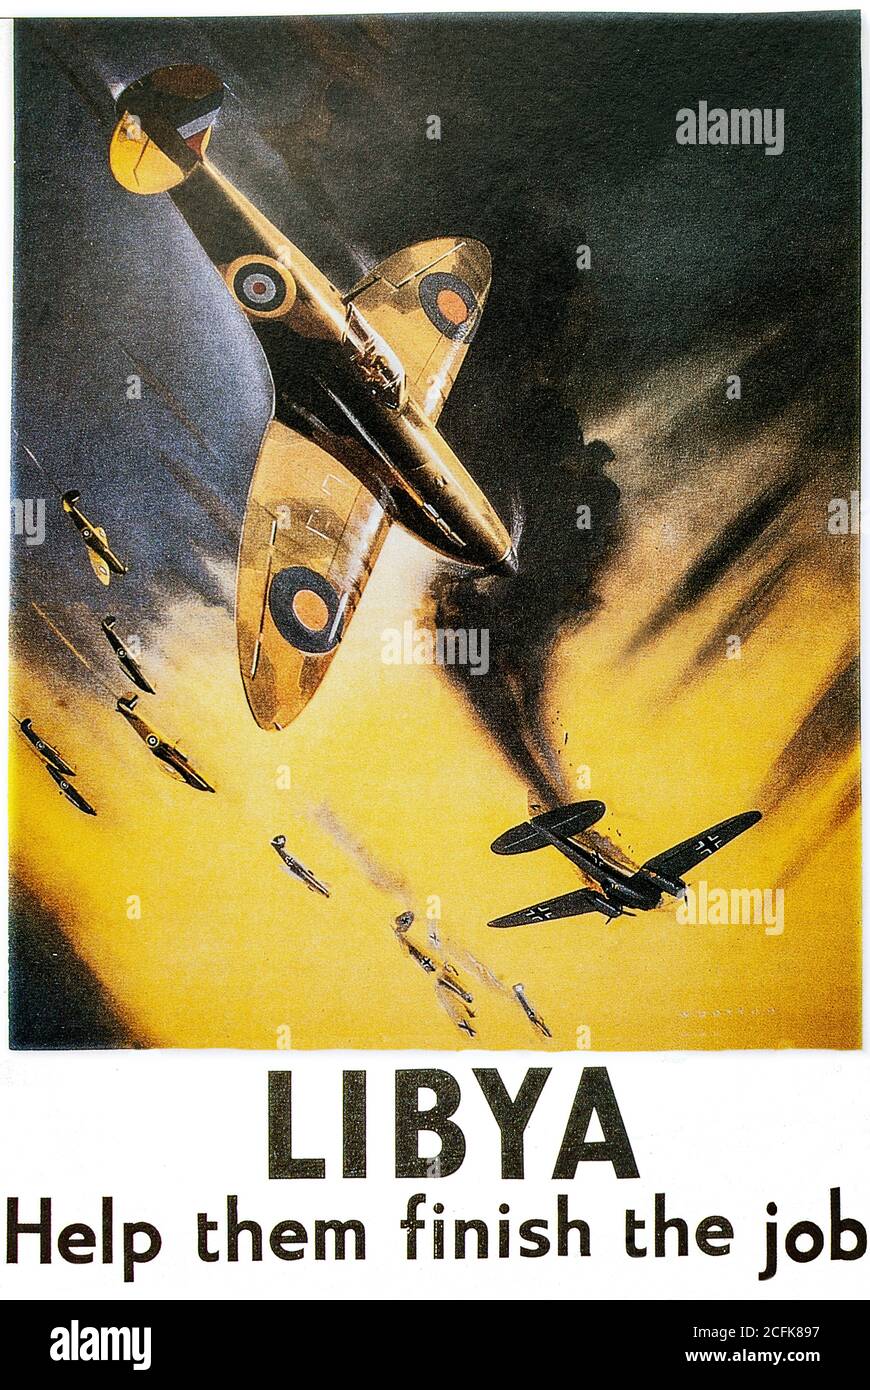 Un poster in tempo di guerra che illustra un Supermarine Spitfire, un aereo da combattimento monoposto che ha sparato un Heinkel He 111 aerei bombardieri tedeschi sulla Libia durante la campagna del deserto occidentale della seconda guerra mondiale. Foto Stock